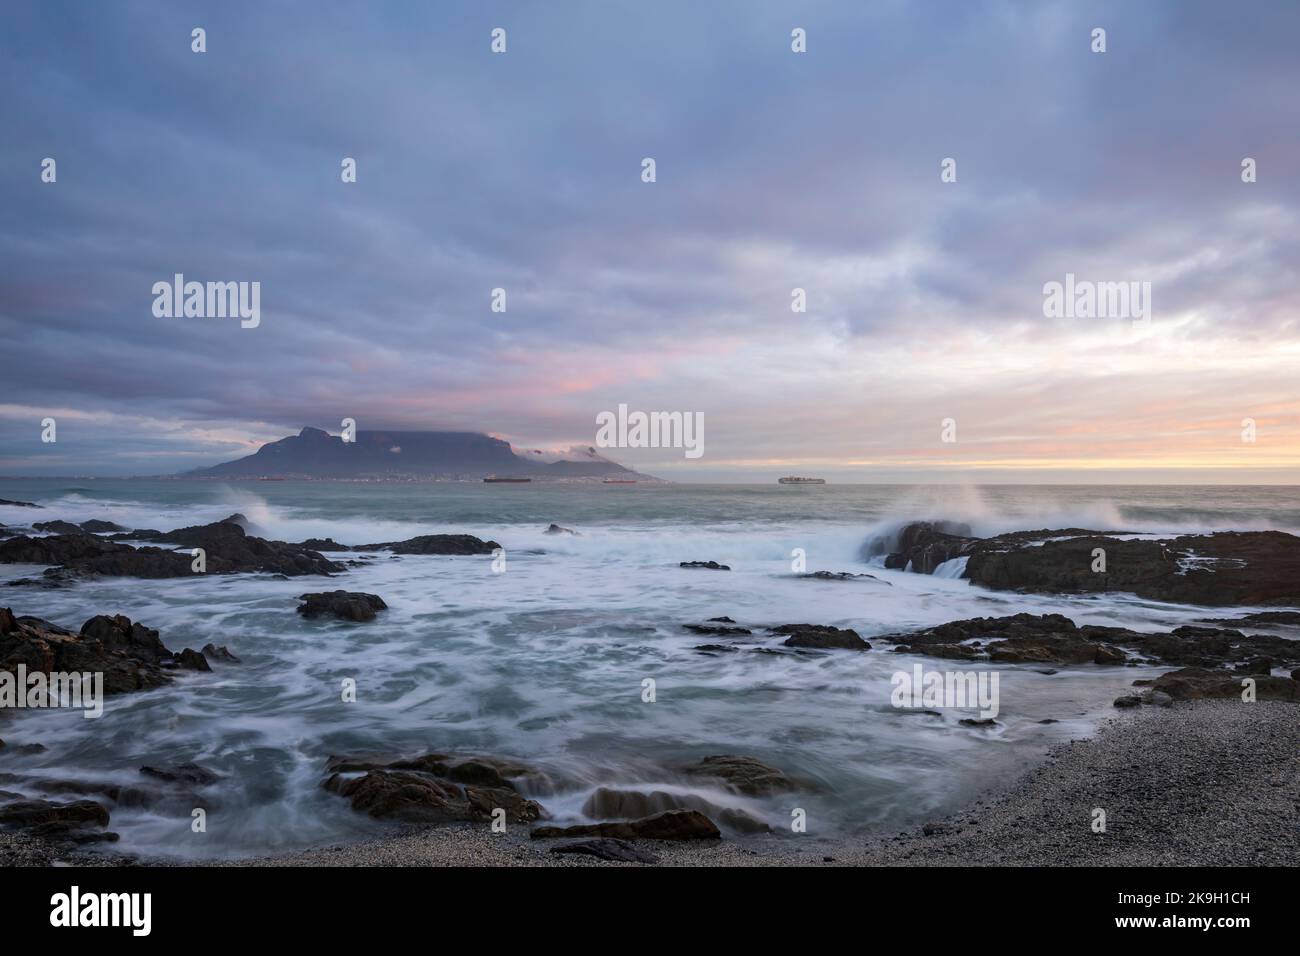 Vue iconique sur Table Bay de Table Mountain et Cape Town lors d'une journée nuageux au coucher du soleil depuis Bloubergstrand dans le Cap occidental. Afrique du Sud. Banque D'Images